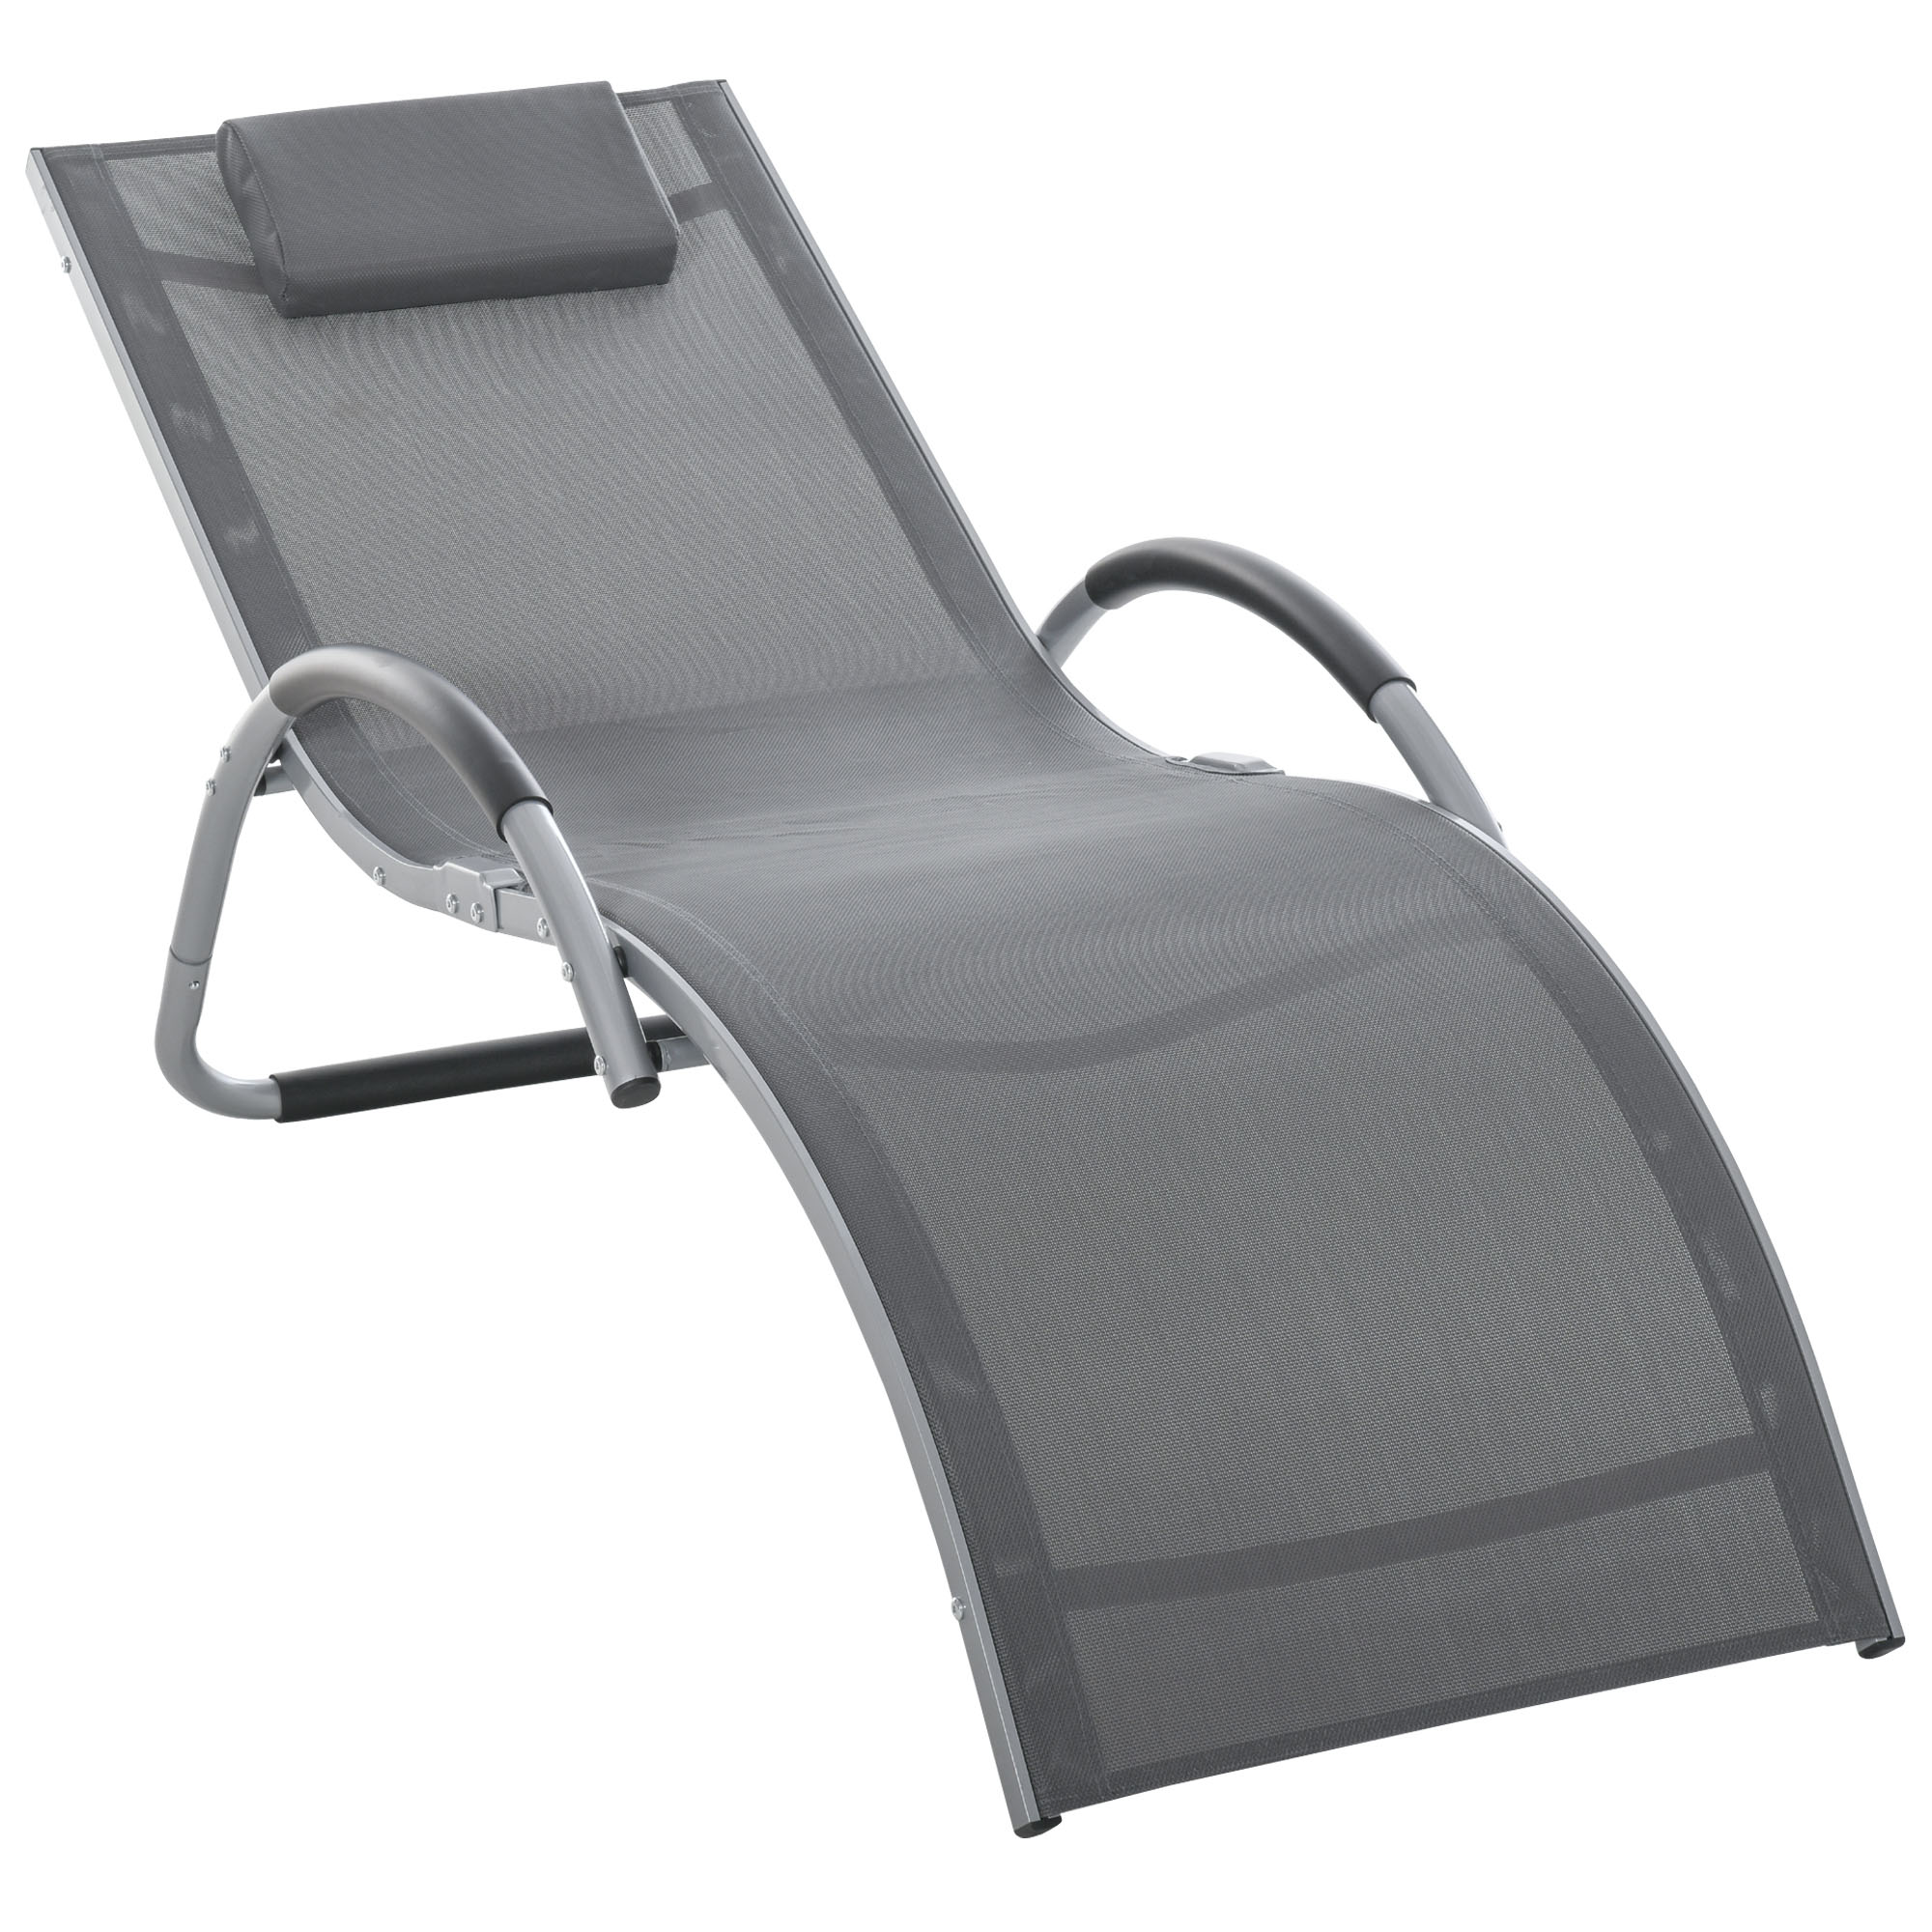 outsunny chaise longue bain de soleil de jardin avec appui-tÃªte design ergonomique grand confort lÃ©ger moderne aluminium txtilÃ¨ne gris foncÃ©